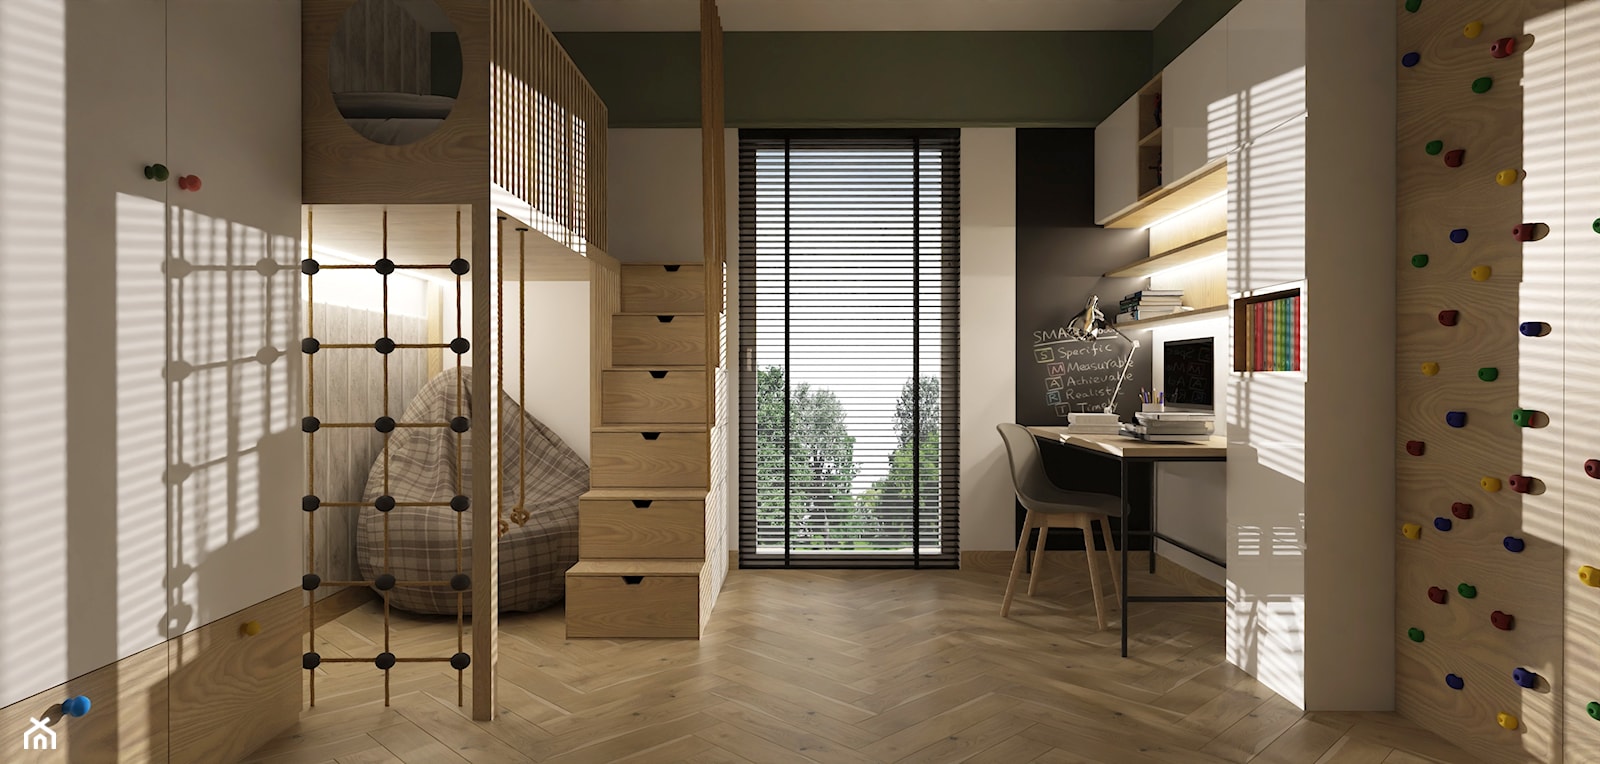 Pokój chłopca z piętrowym łóżkiem - Pokój dziecka, styl nowoczesny - zdjęcie od E Home Design - Homebook